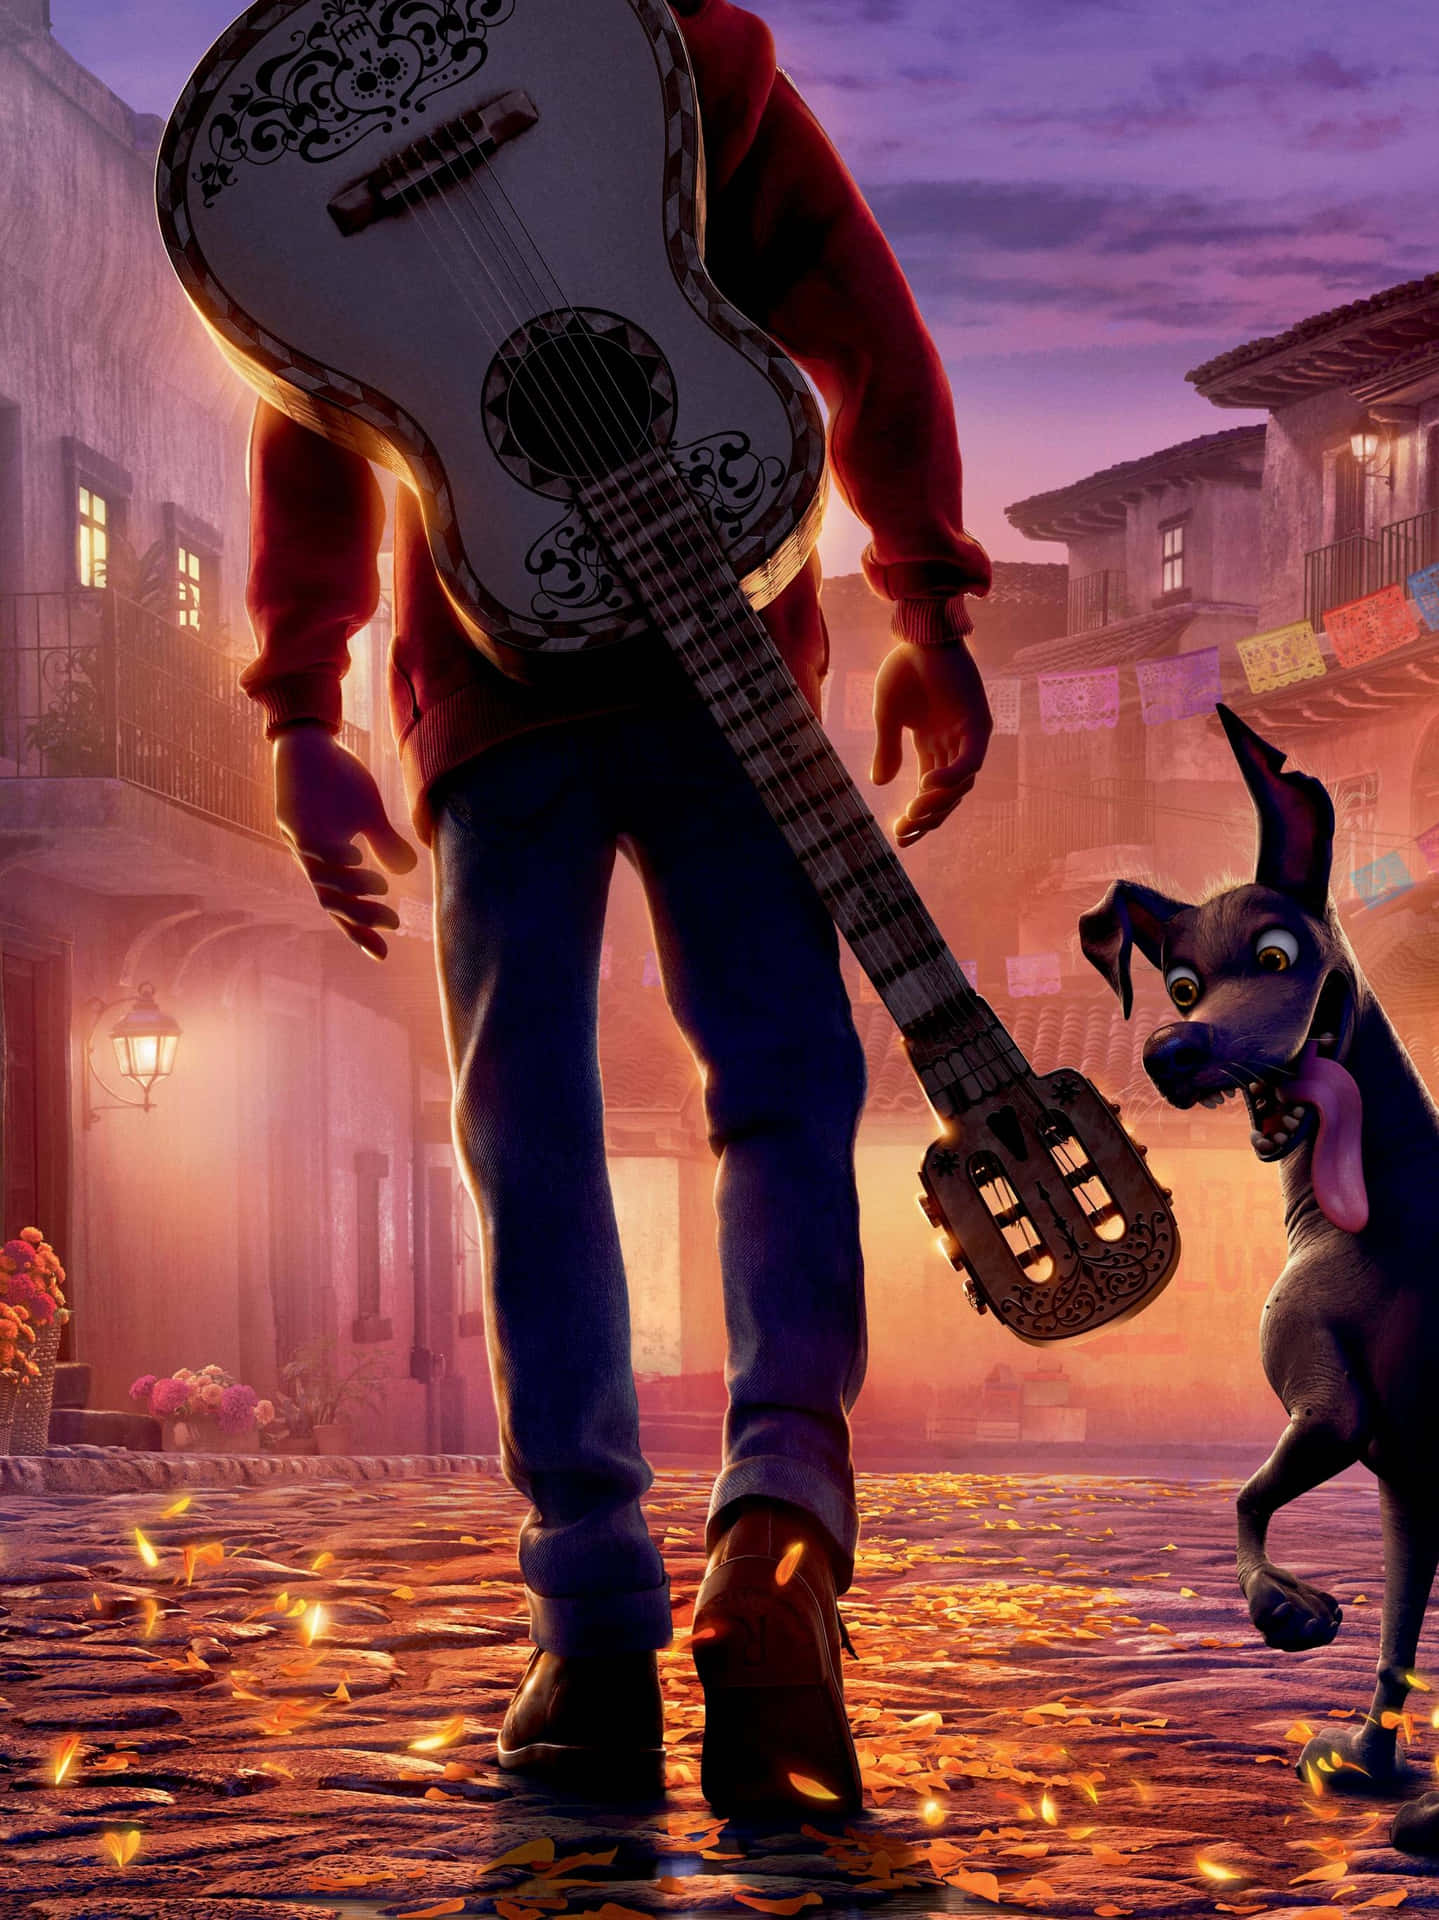 Oplevlivets Rejse Med De Livlige Farver Fra Pixars Coco.